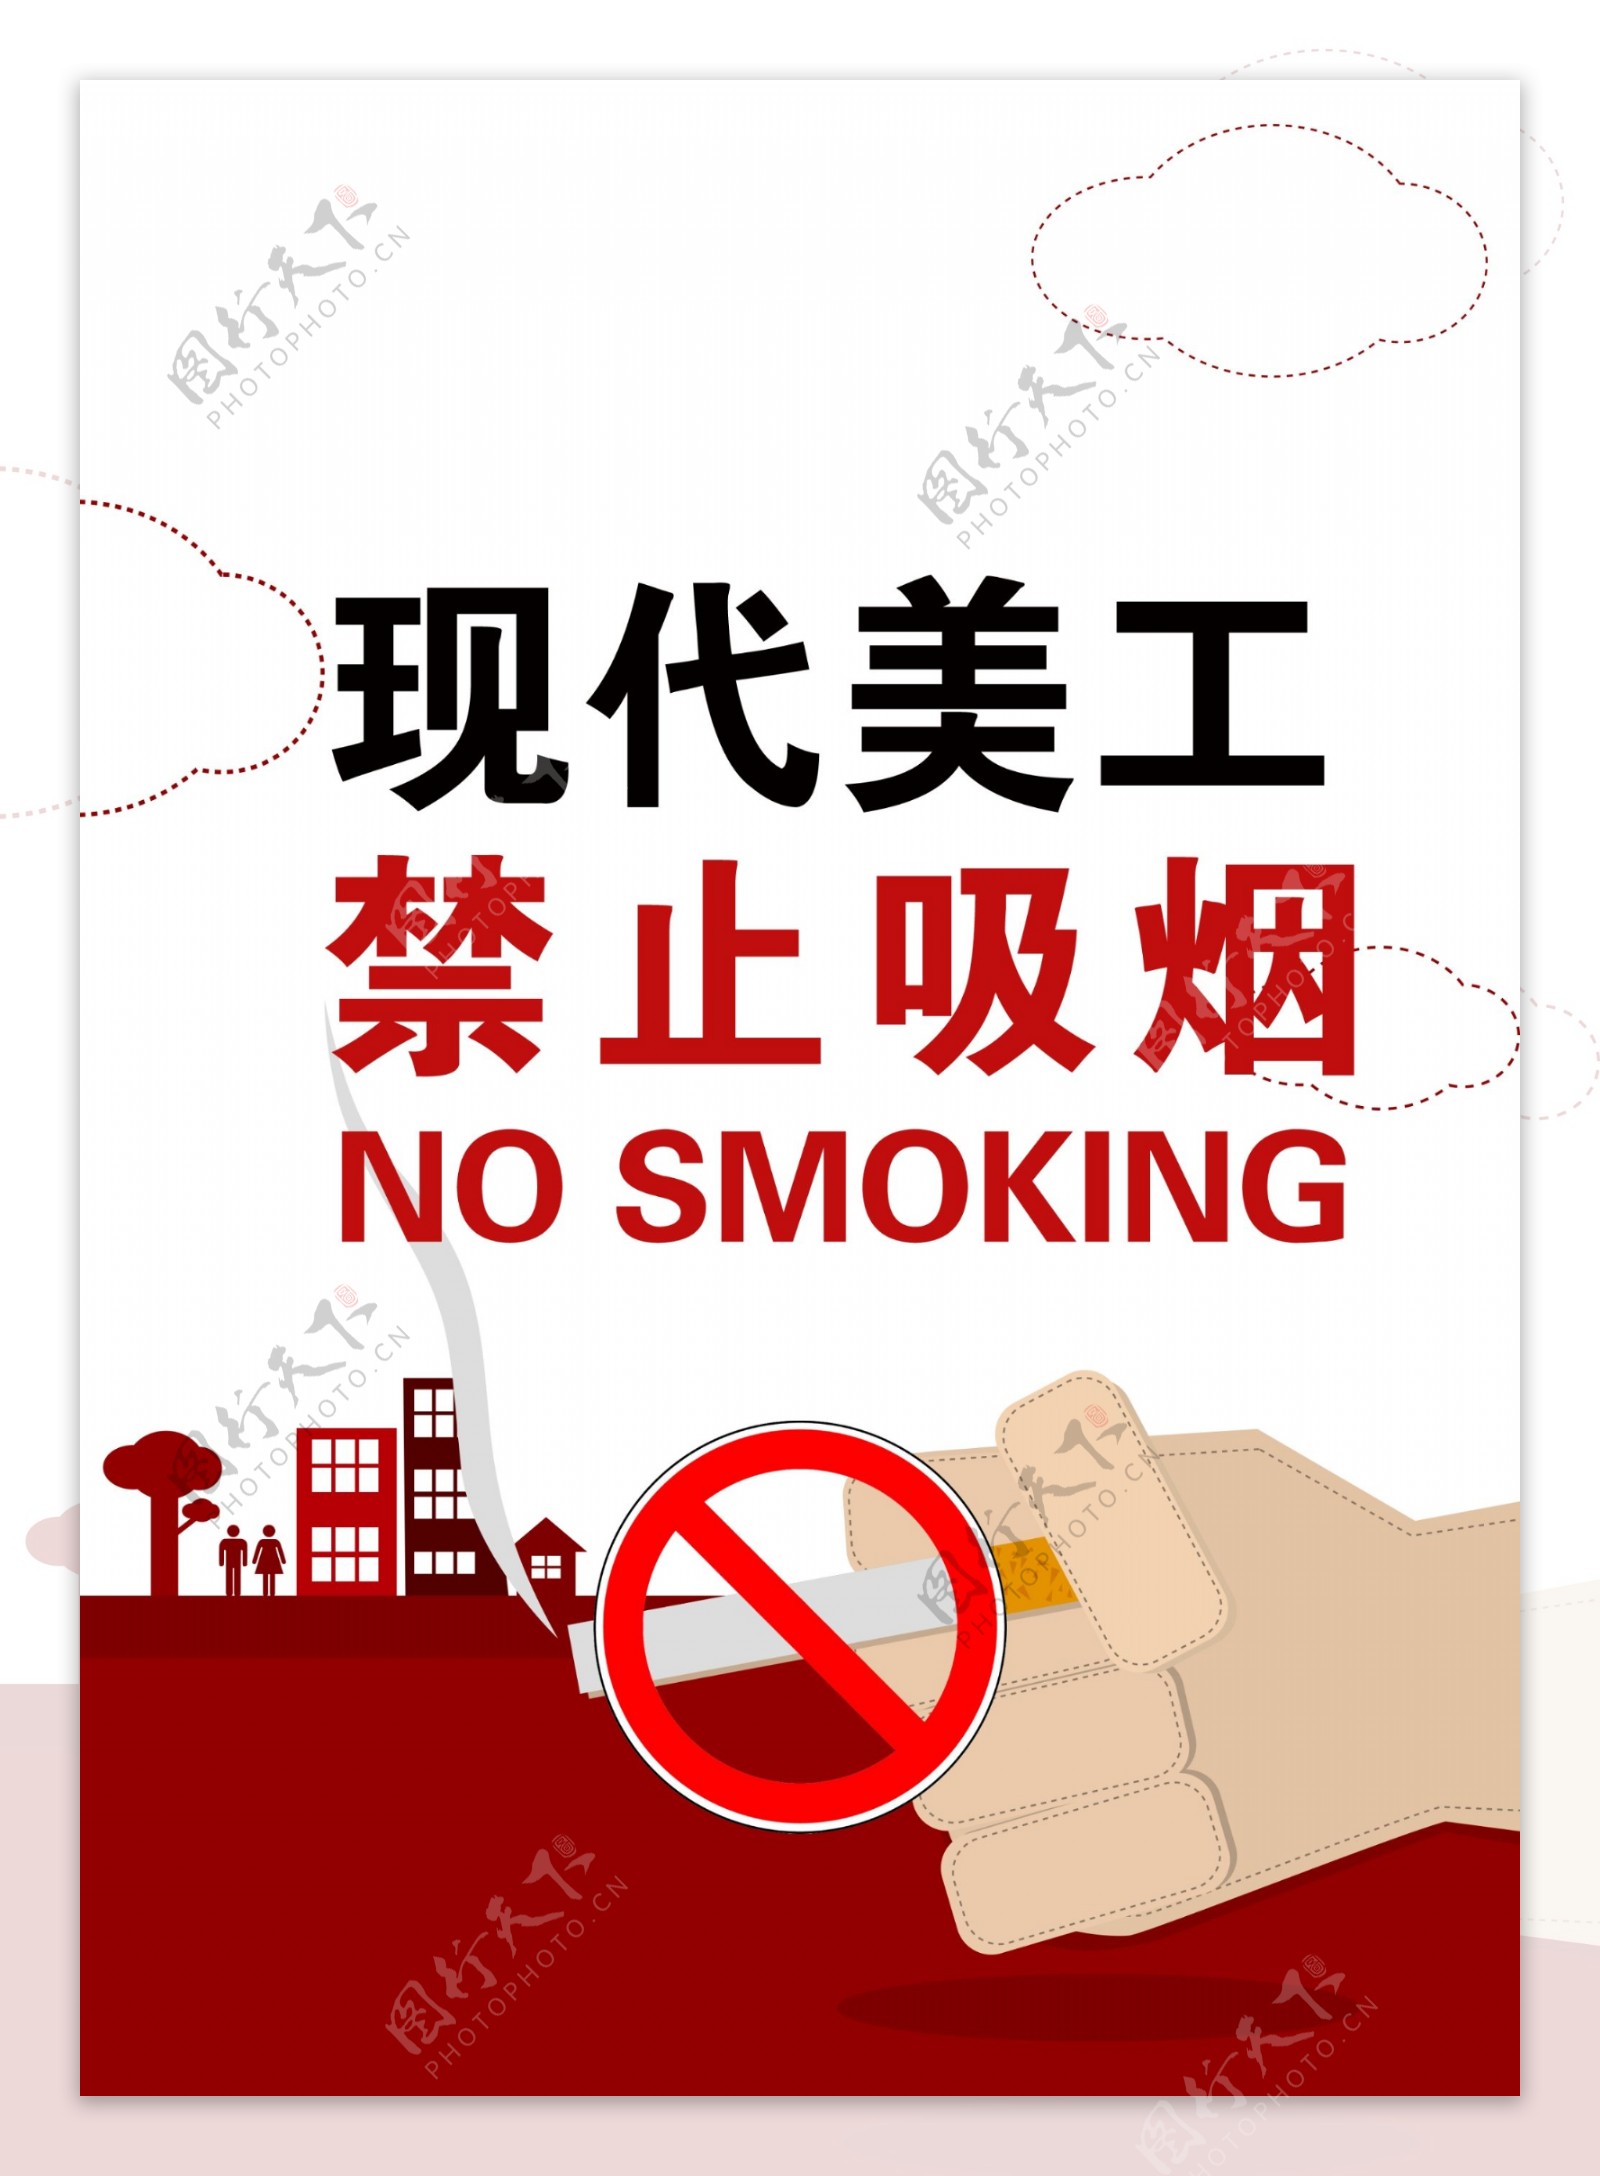 平面设计禁烟公益广告素材